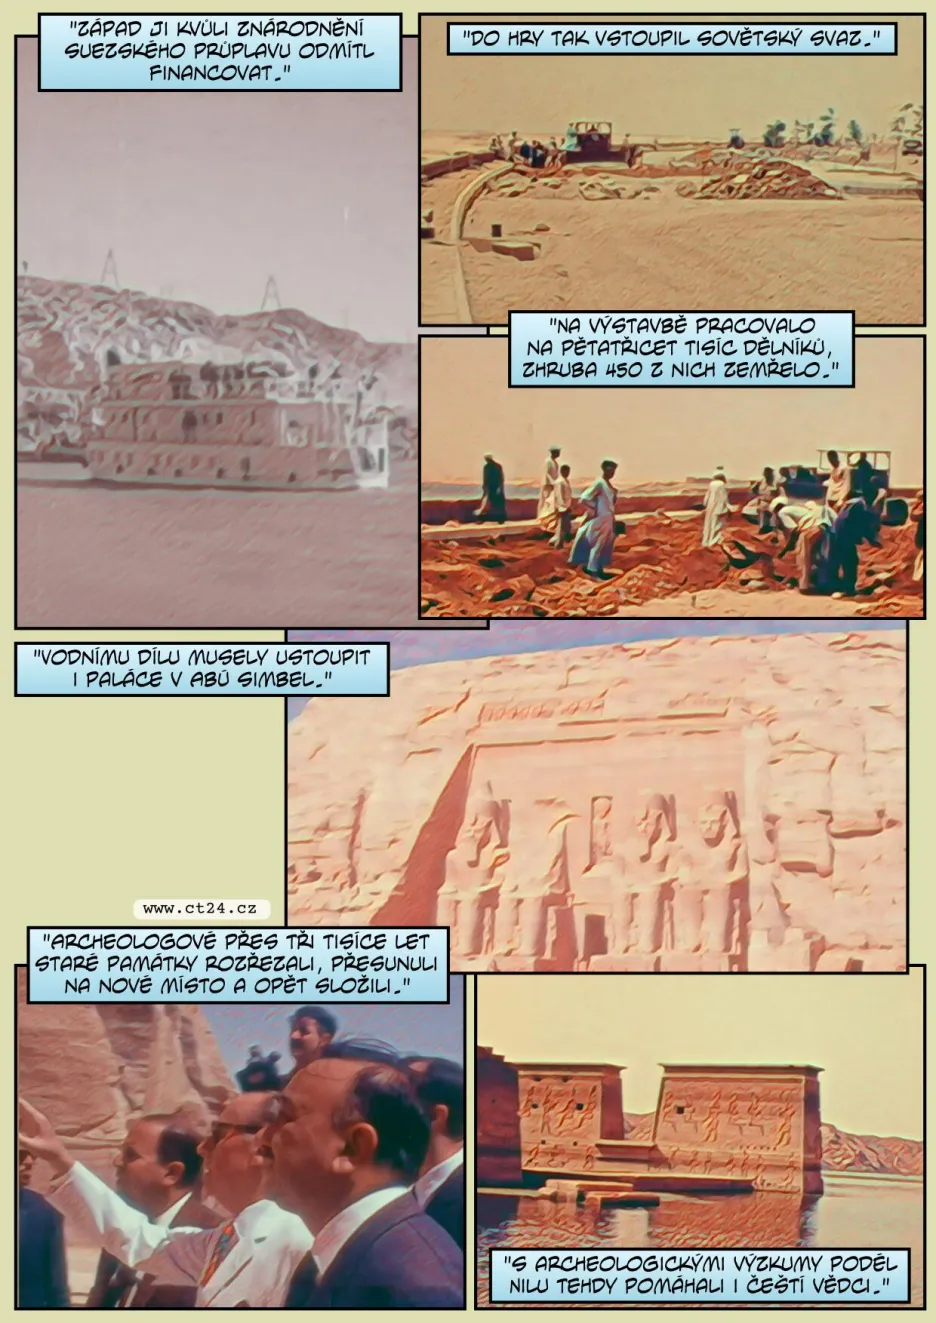 Hráz, která zkrotila Nil a zatopila údolí Abú Simbelu. Egyptu se stavbou Vysoké asuánské přehrady pomáhal Chruščov